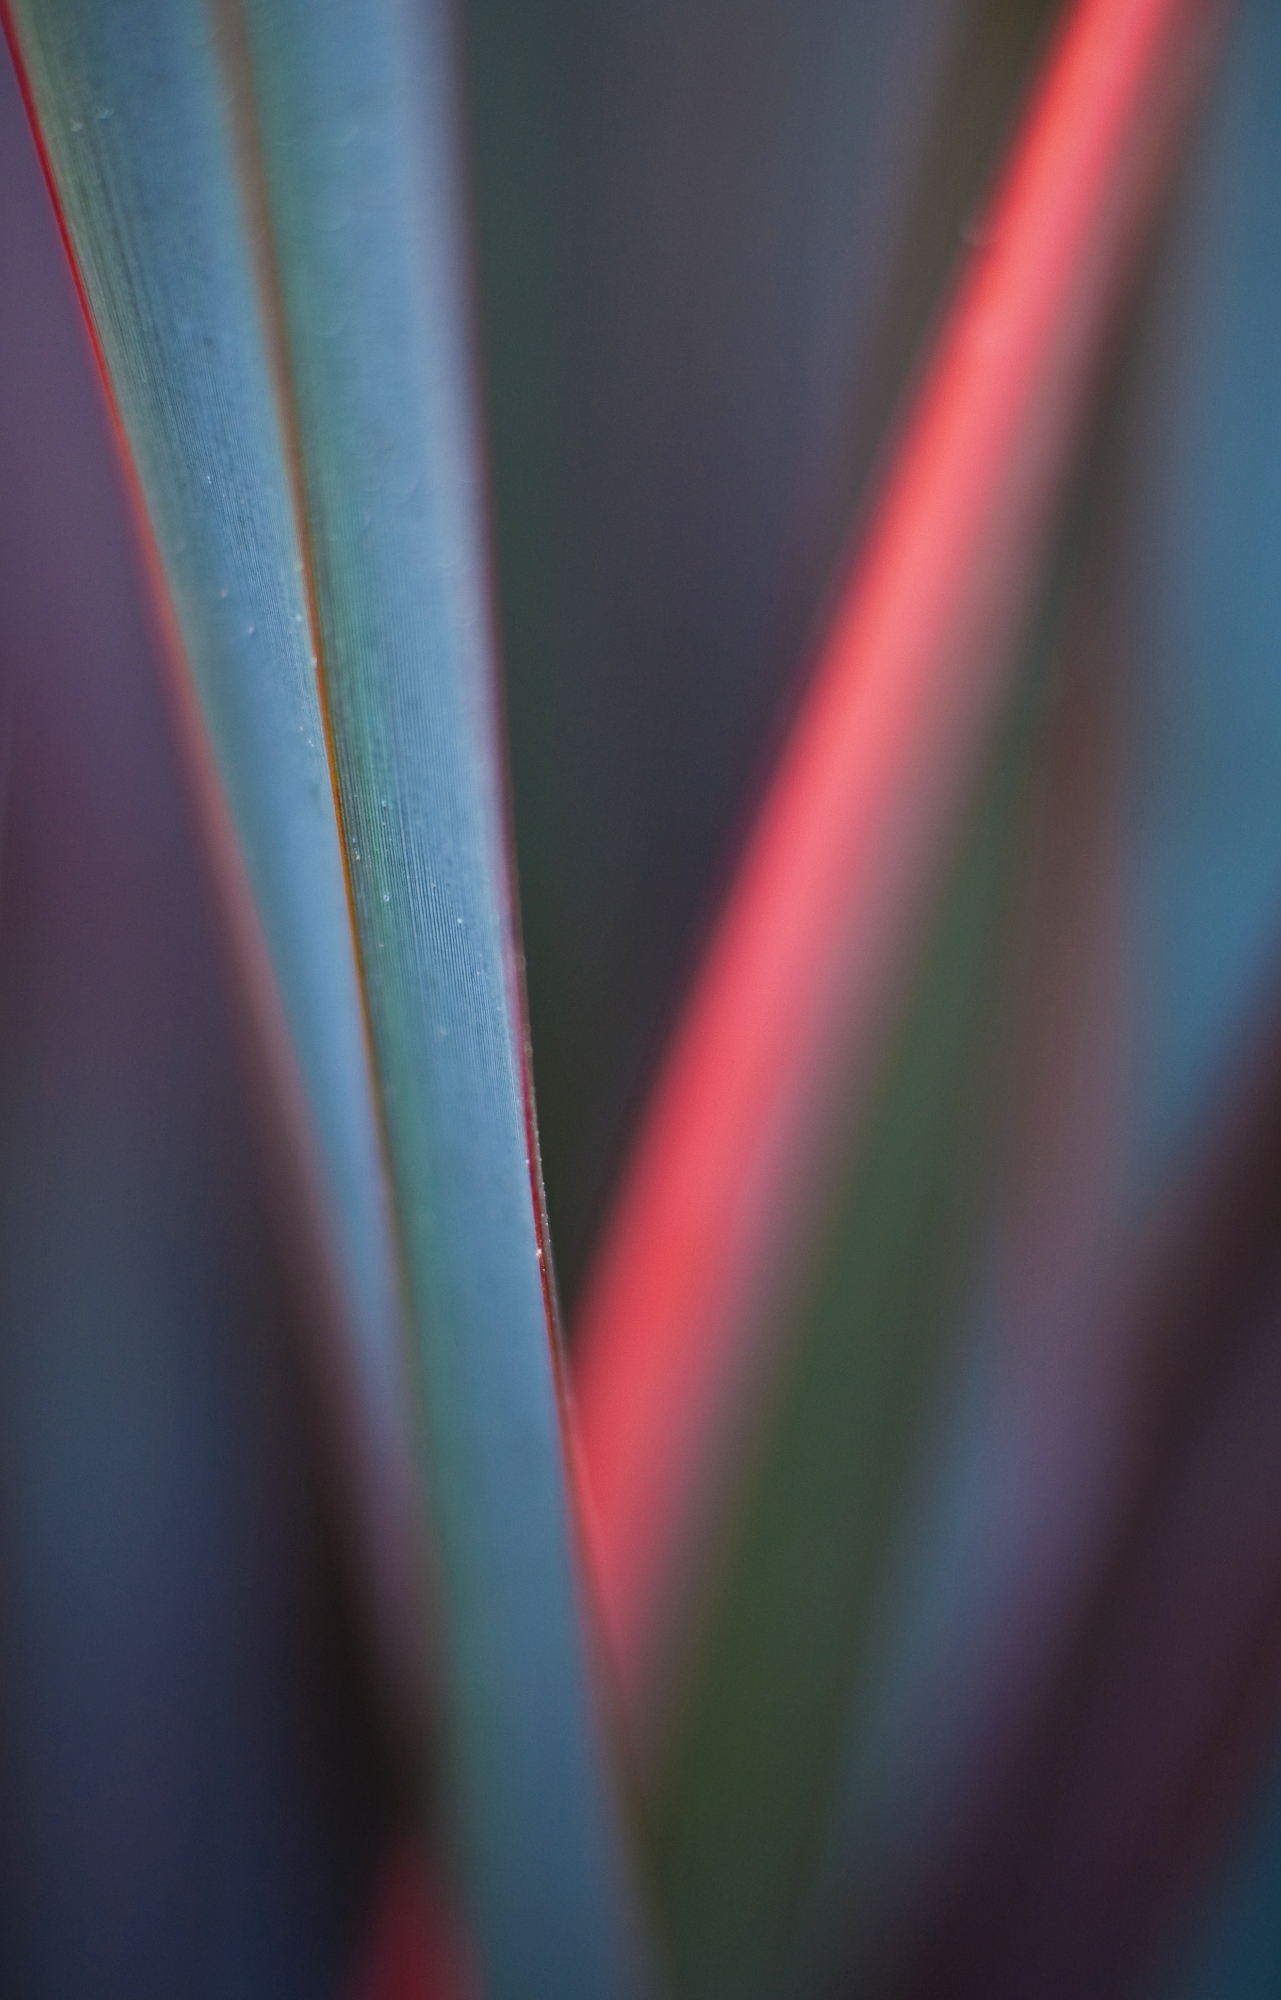 Blade of Red Green Grass Closeup.jpg 